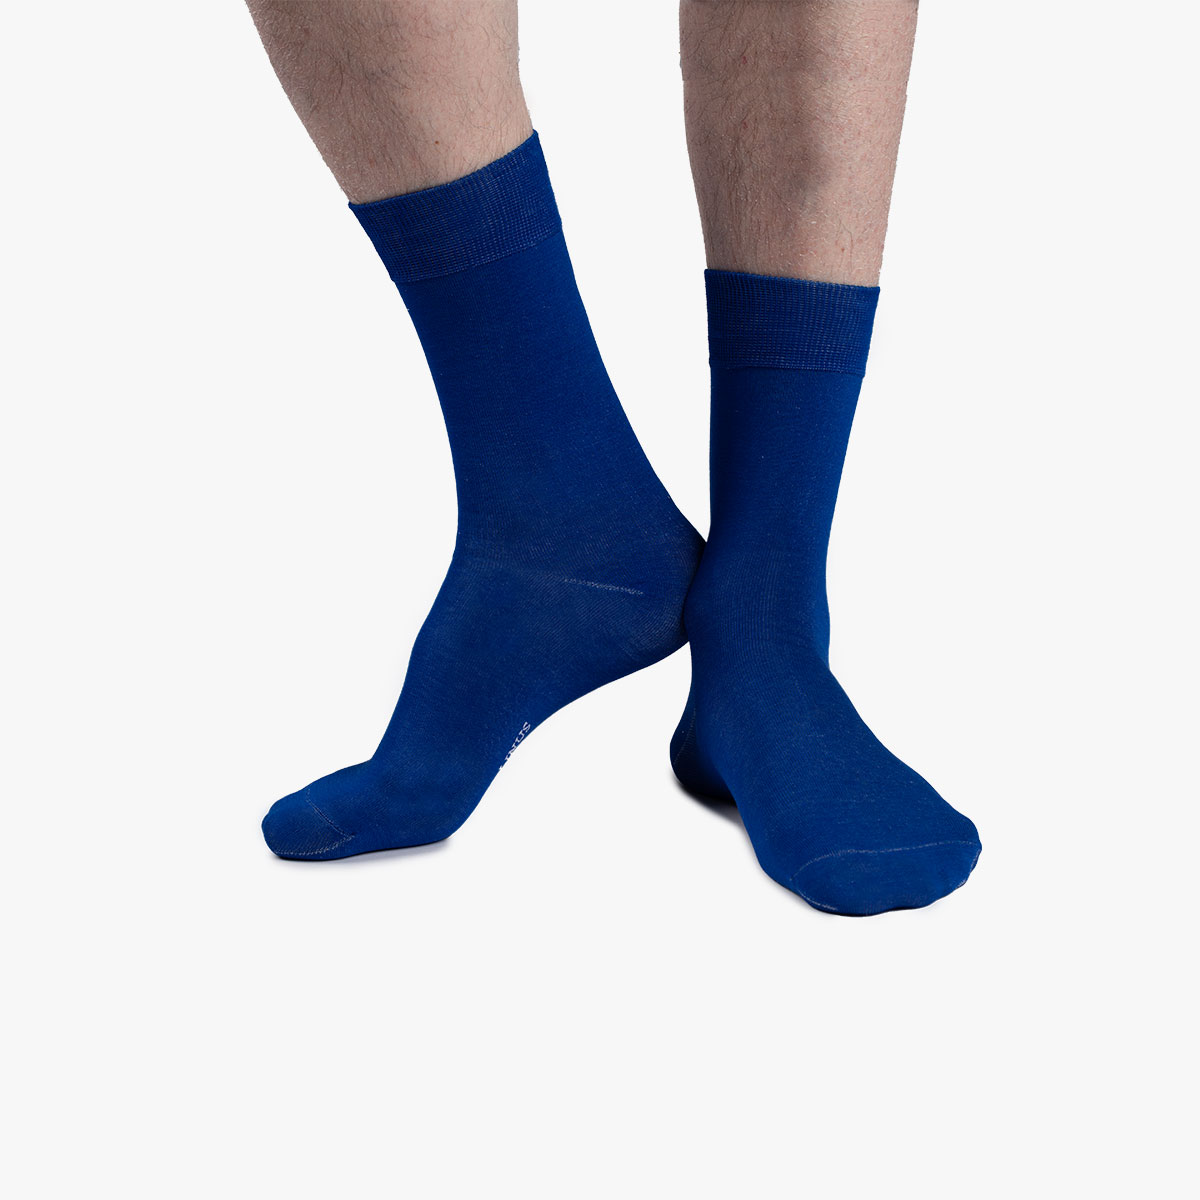 Socken in blau aus der Sockenbox am Fuß